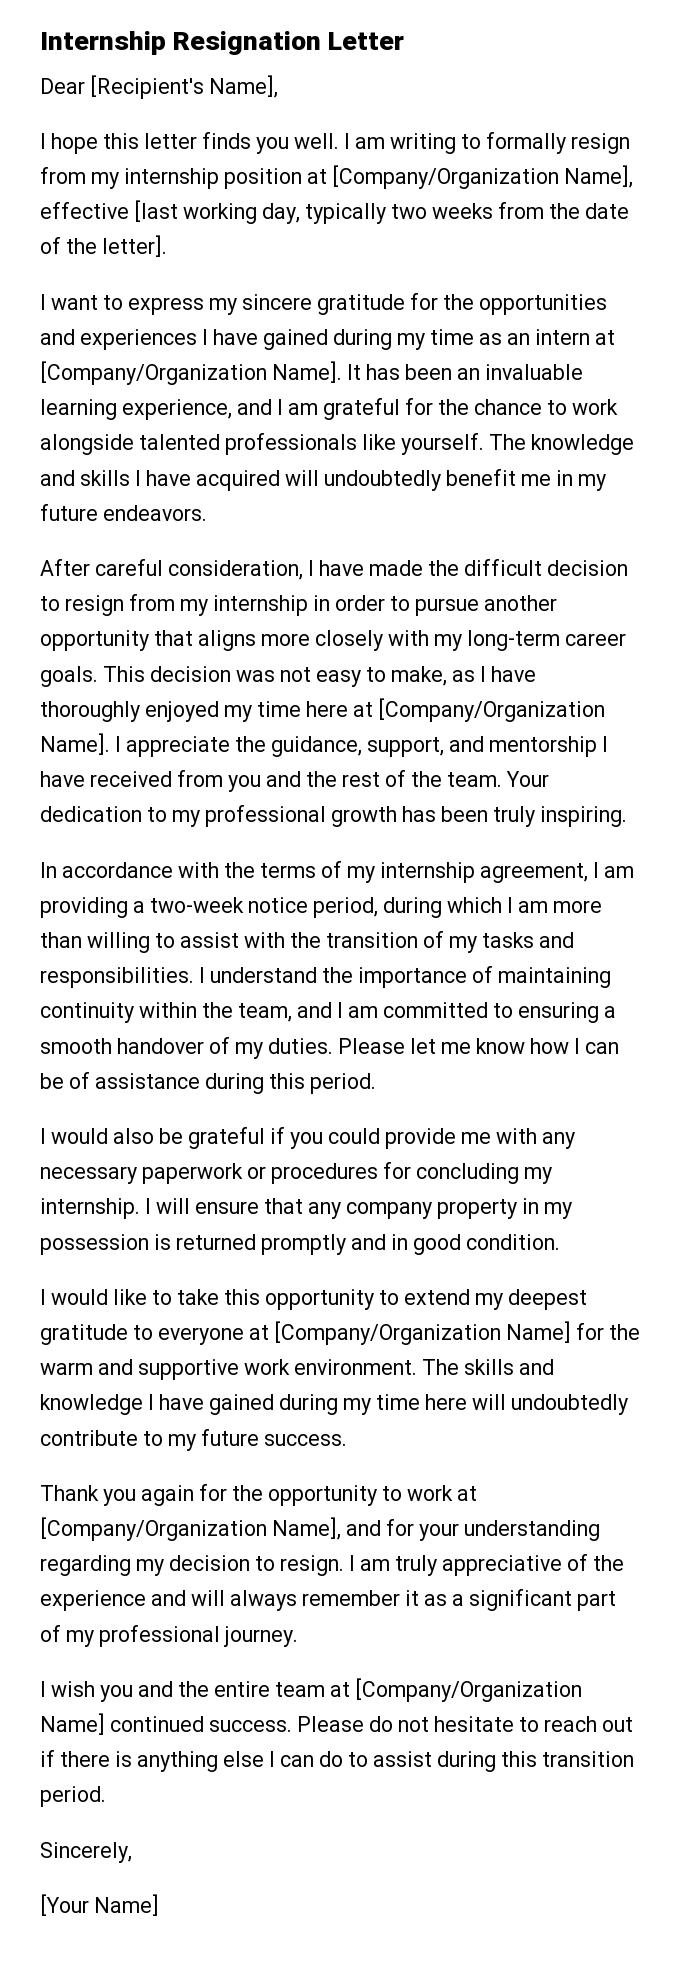 Internship Resignation Letter